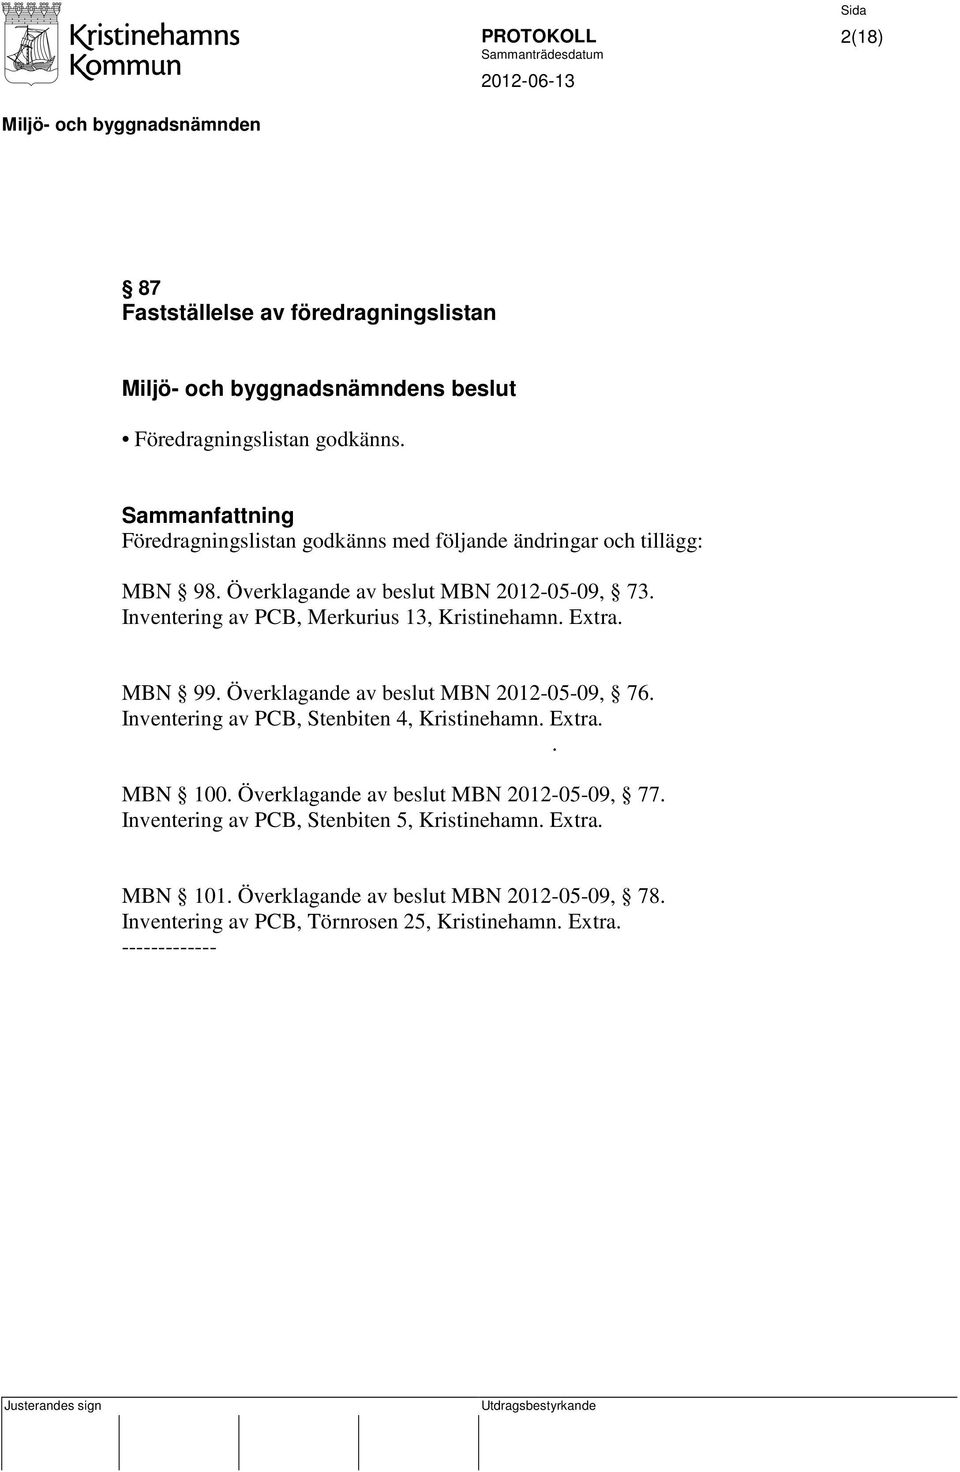 Inventering av PCB, Merkurius 13, Kristinehamn. Extra. MBN 99. Överklagande av beslut MBN 2012-05-09, 76.